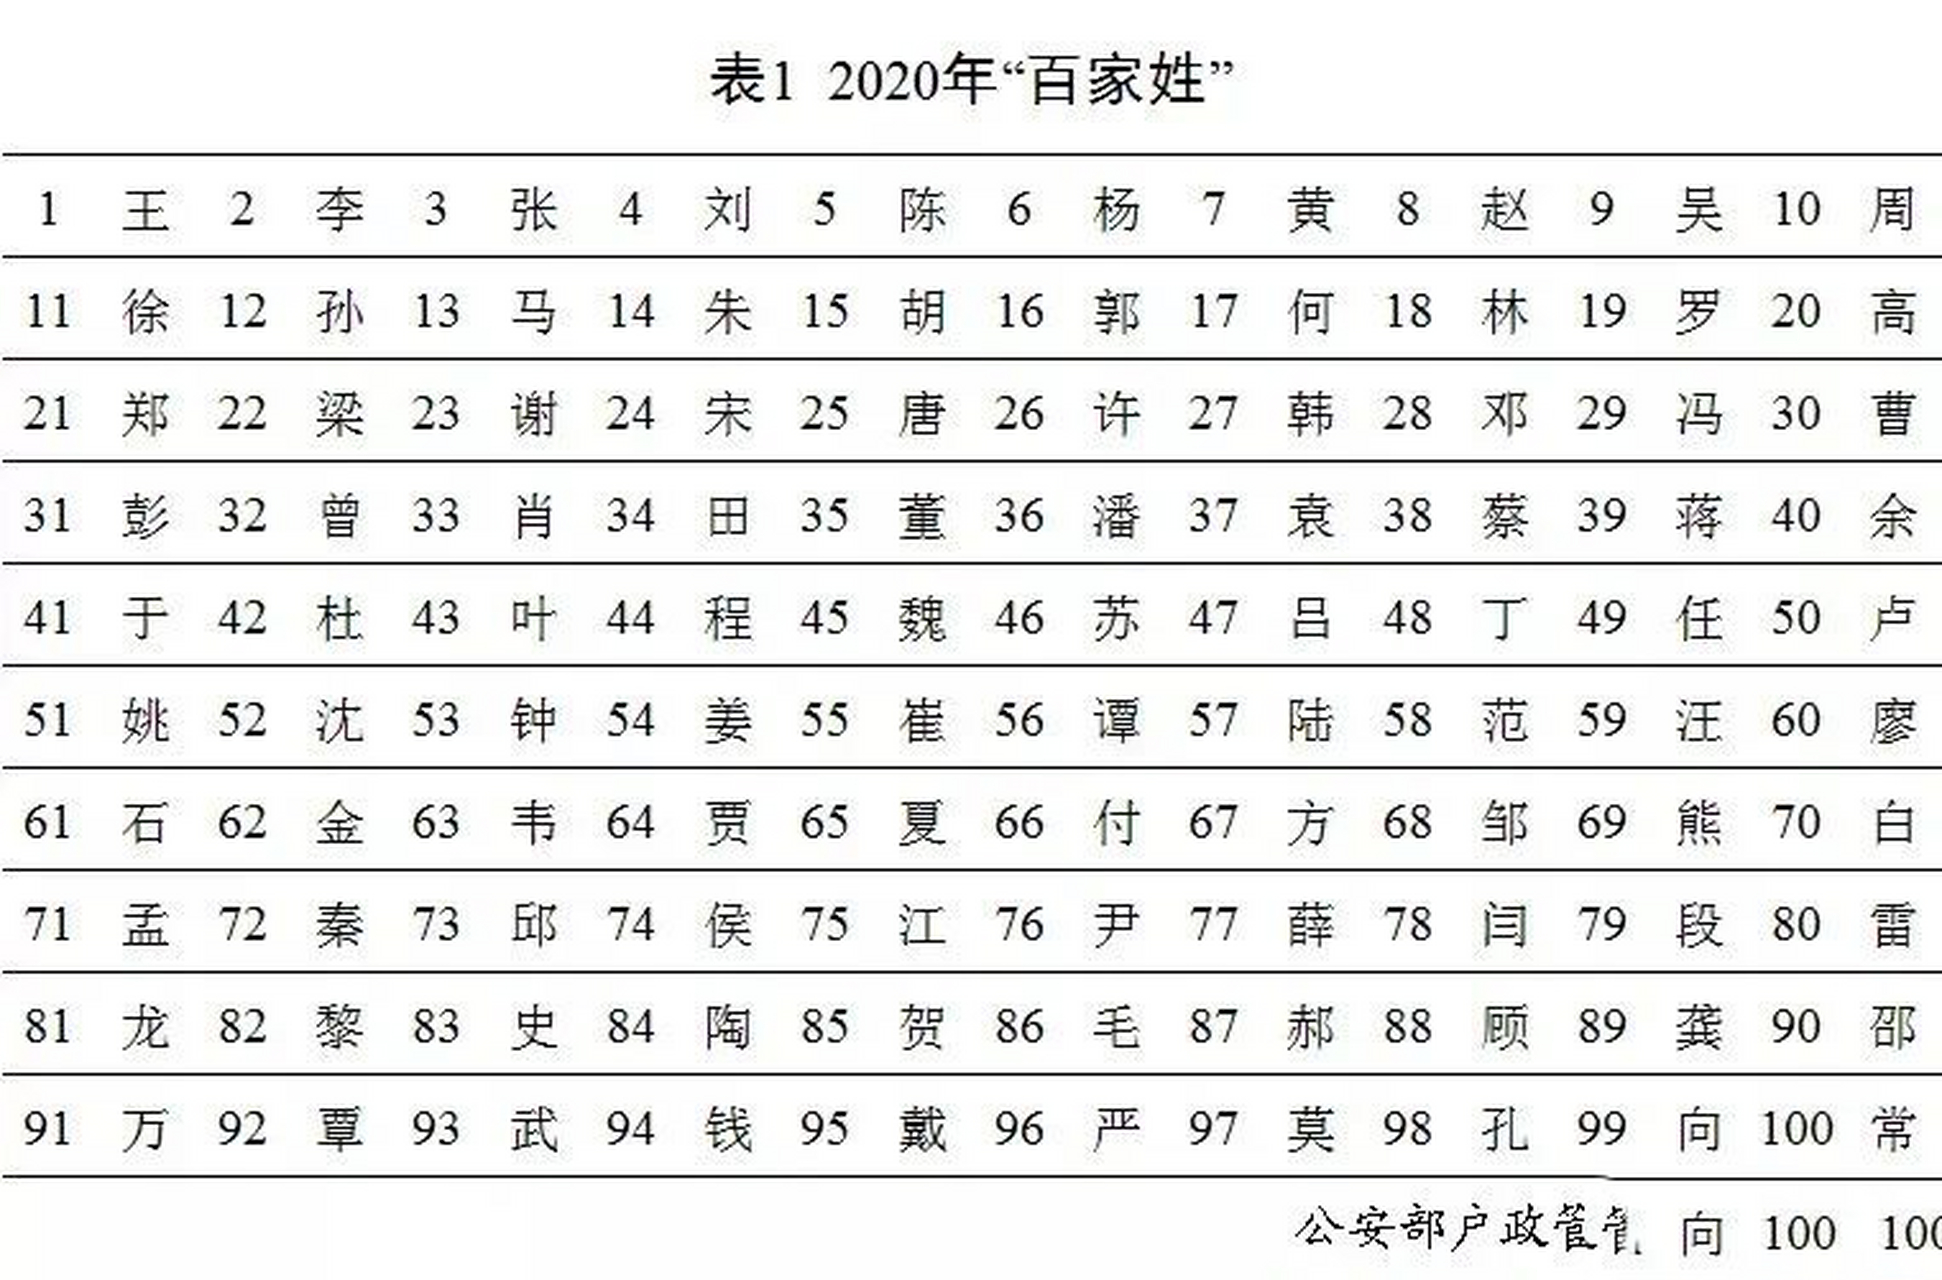 中国最新百家姓排名